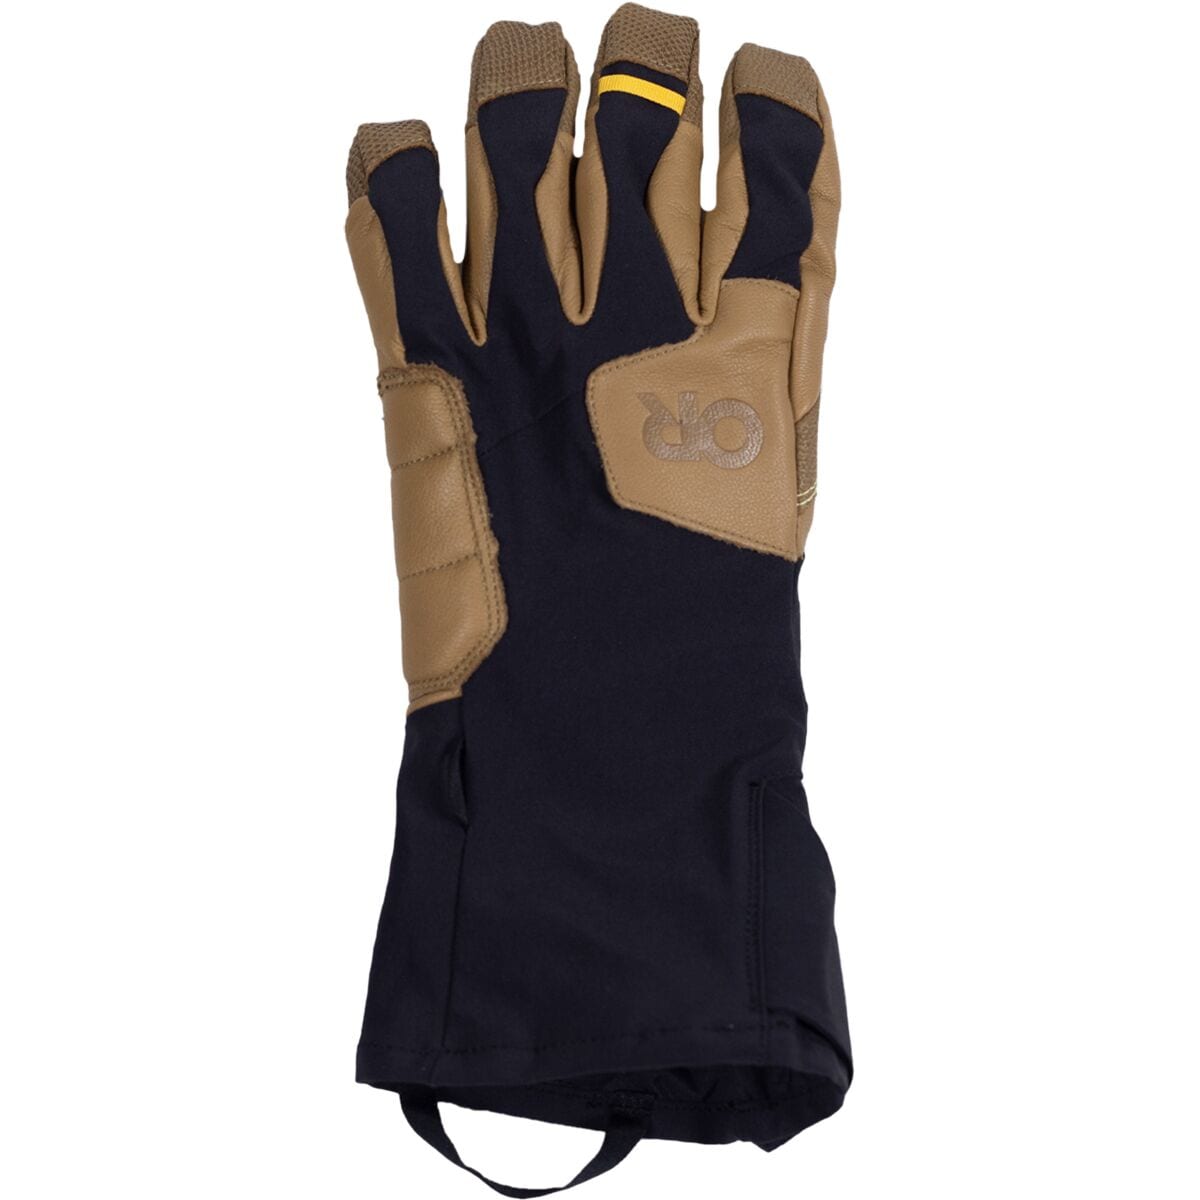 Outdoor Research ExtraVert Glove - Men's